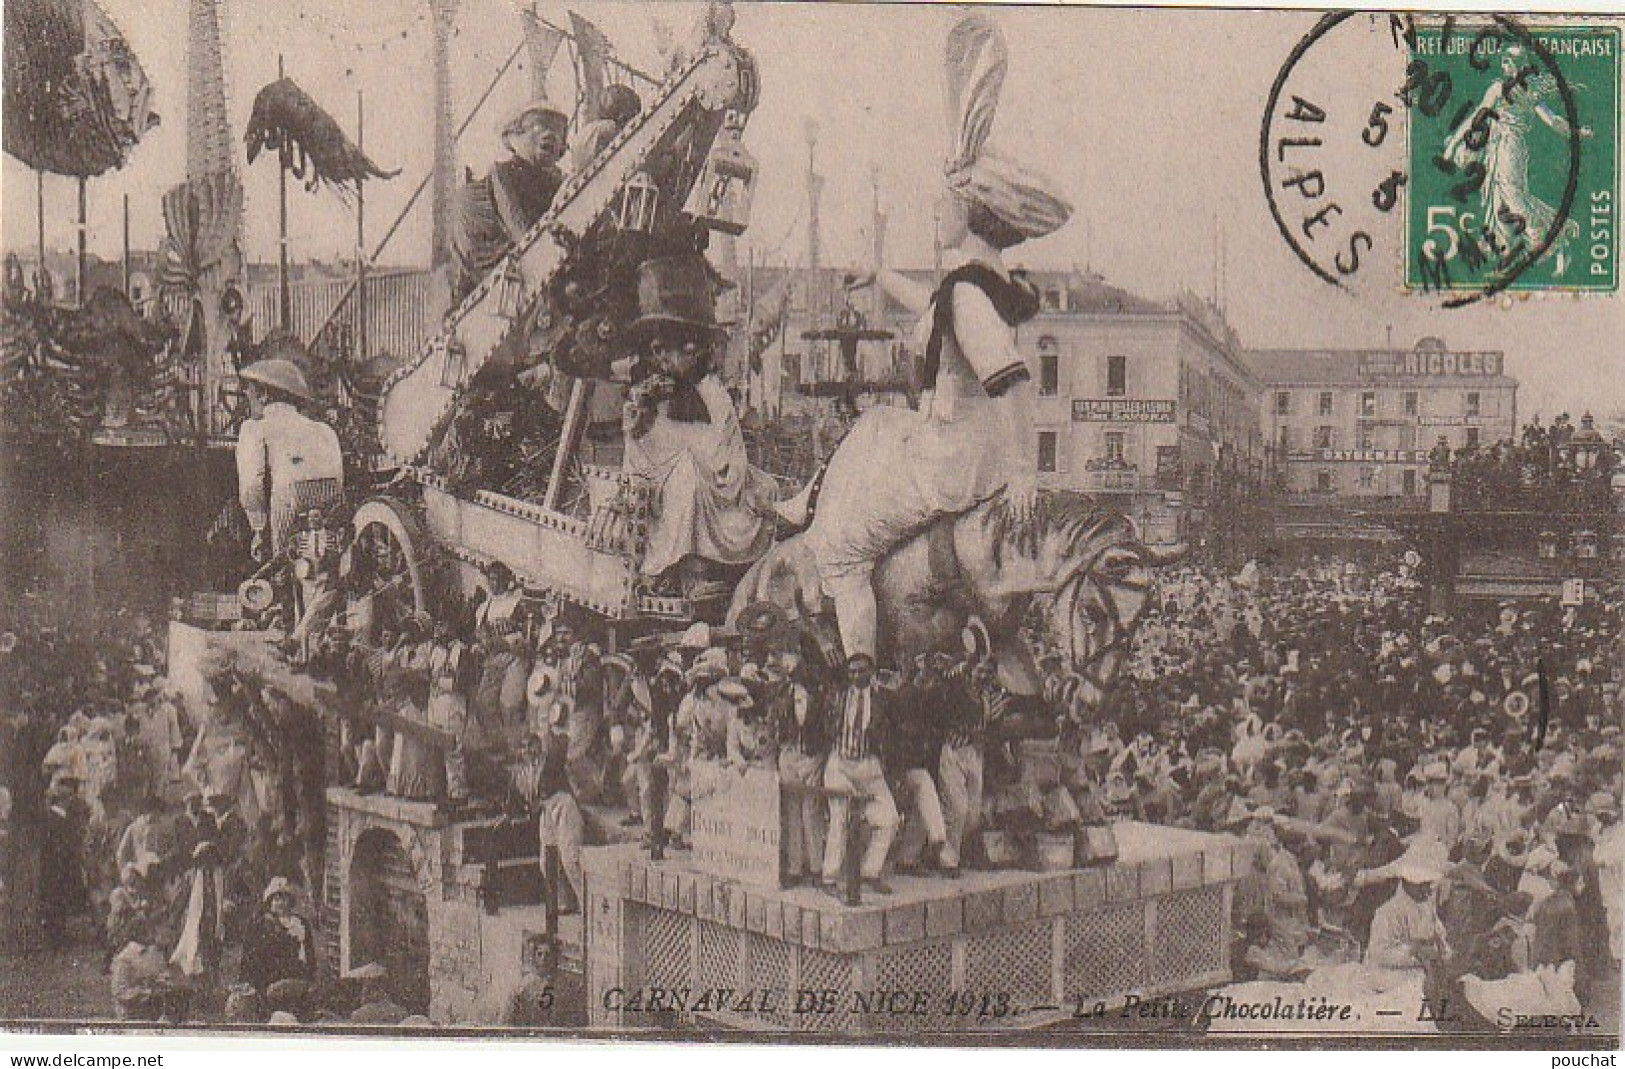 OP 11 -(06) CARNAVAL DE NICE 1913 - LA PETITE CHOCOLATIERE - 2 SCANS - Carnaval